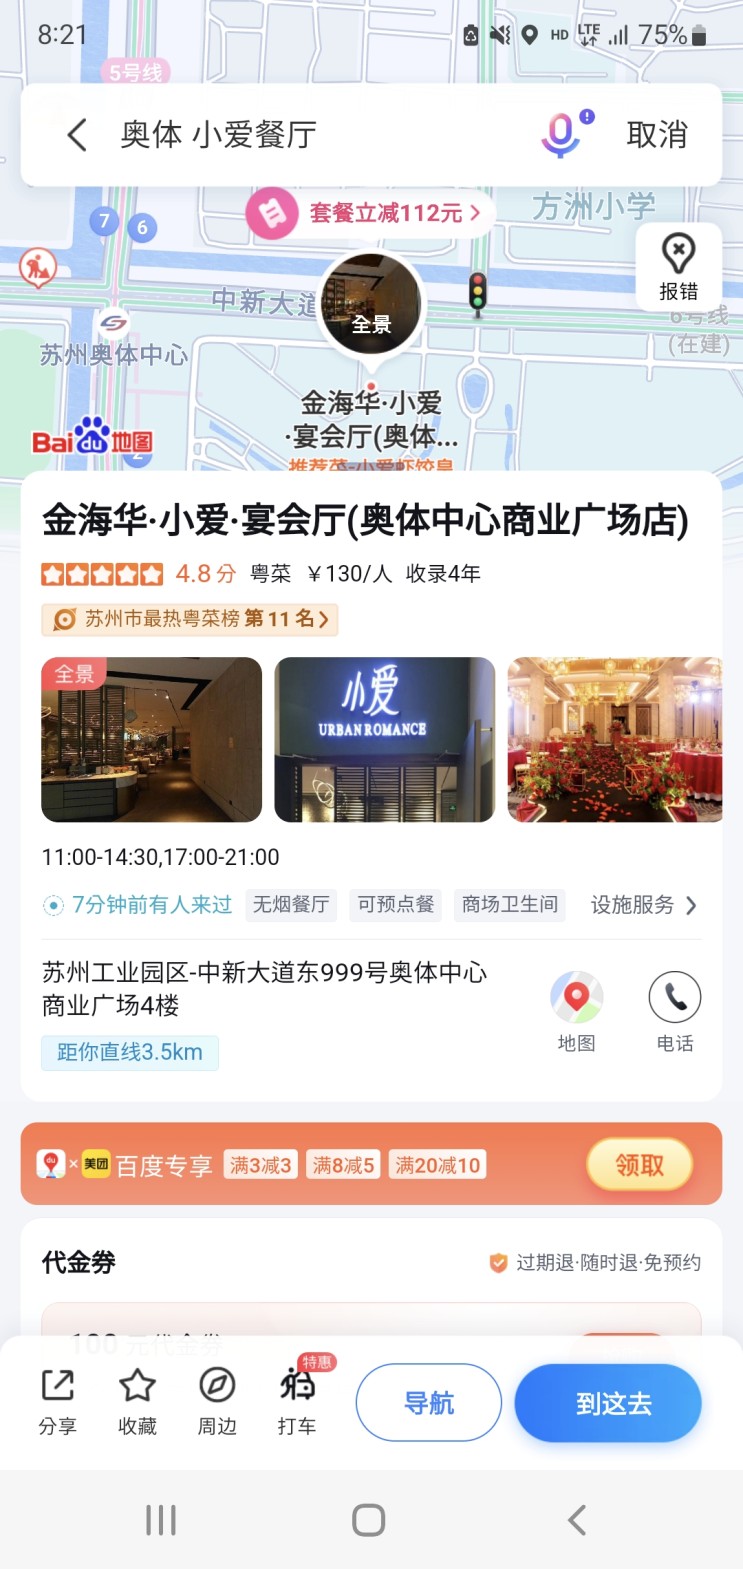 중국 쑤저우 현지인 식당(쑤저우 현지 식당)- 小爱 URBAN ROMANCE (체인점)